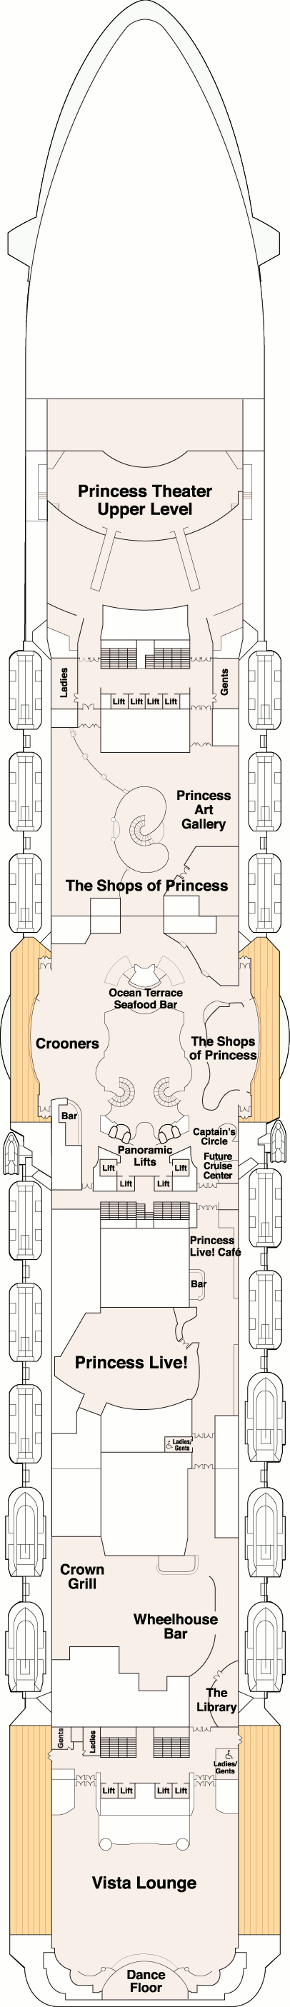 Royal Princess Promenade Deck Deck Plan